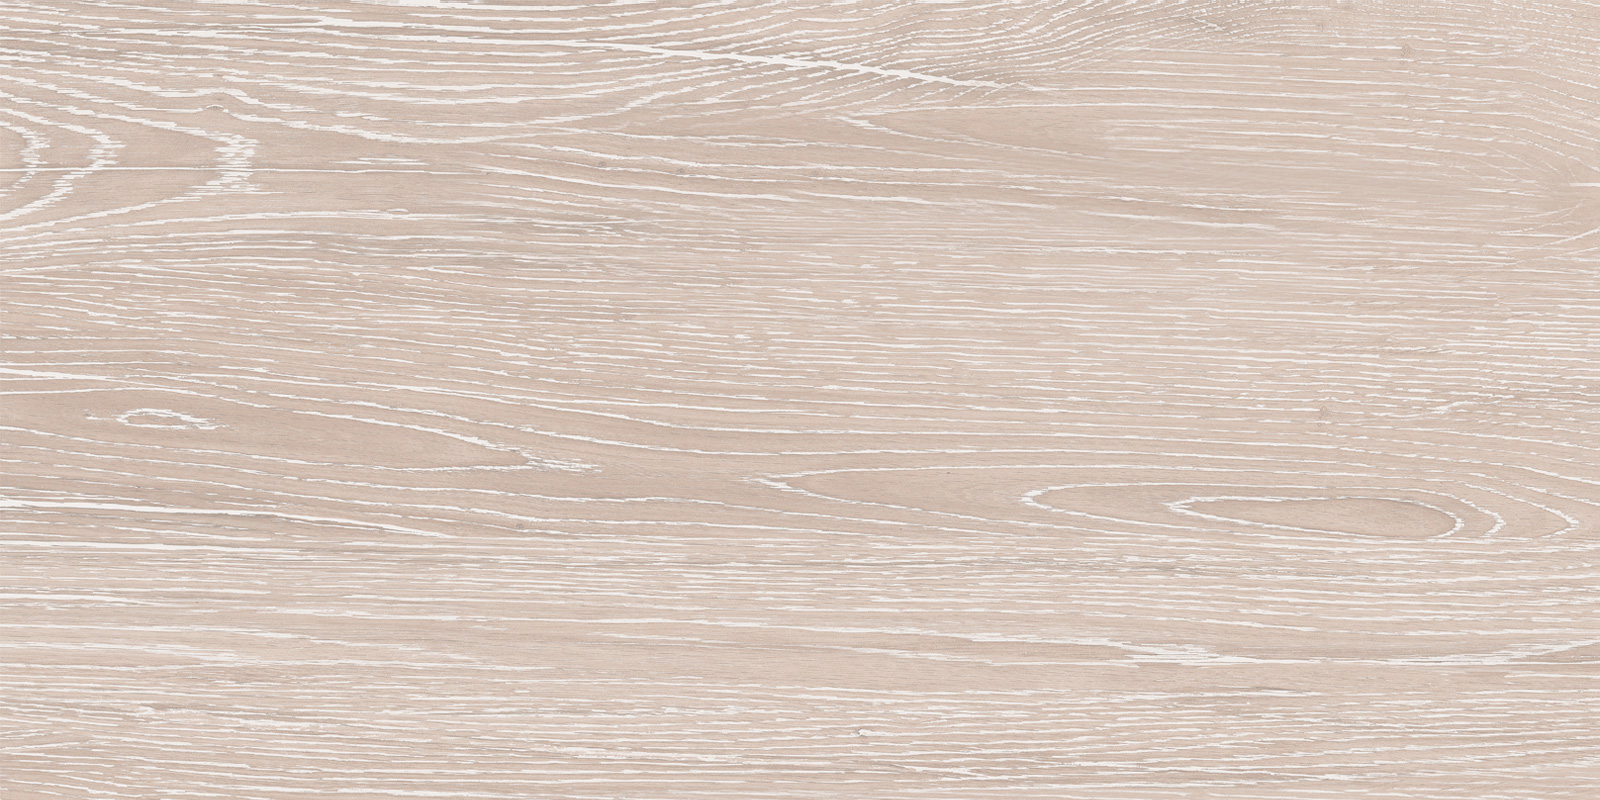 Настенная плитка AltaCera Artdeco Wood 25x50 настенная плитка altacera rejina touch beige wt11tch11 20x60